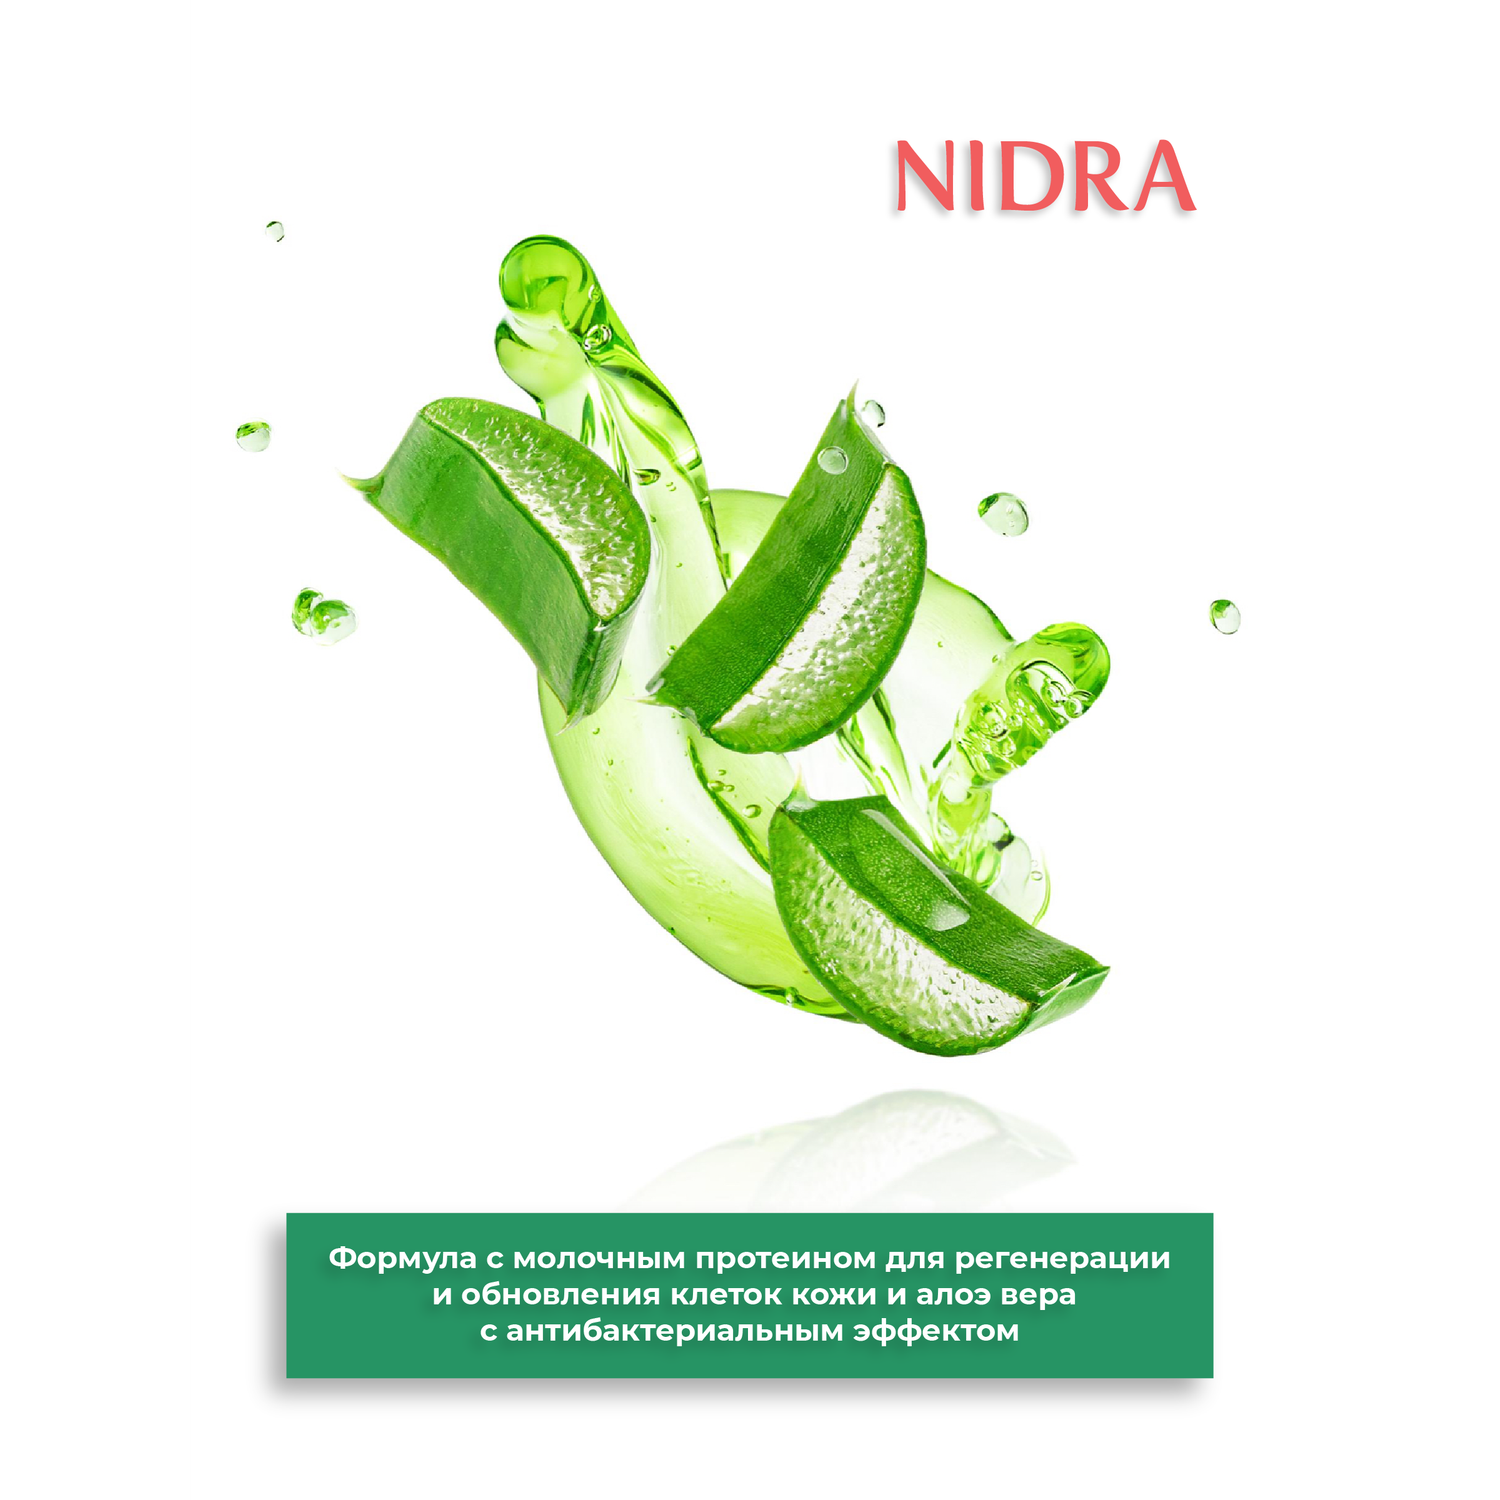 Гель для интимной гигиены Nidra освежающий с молочными протеинами и алоэ 500 мл- 2 шт - фото 4